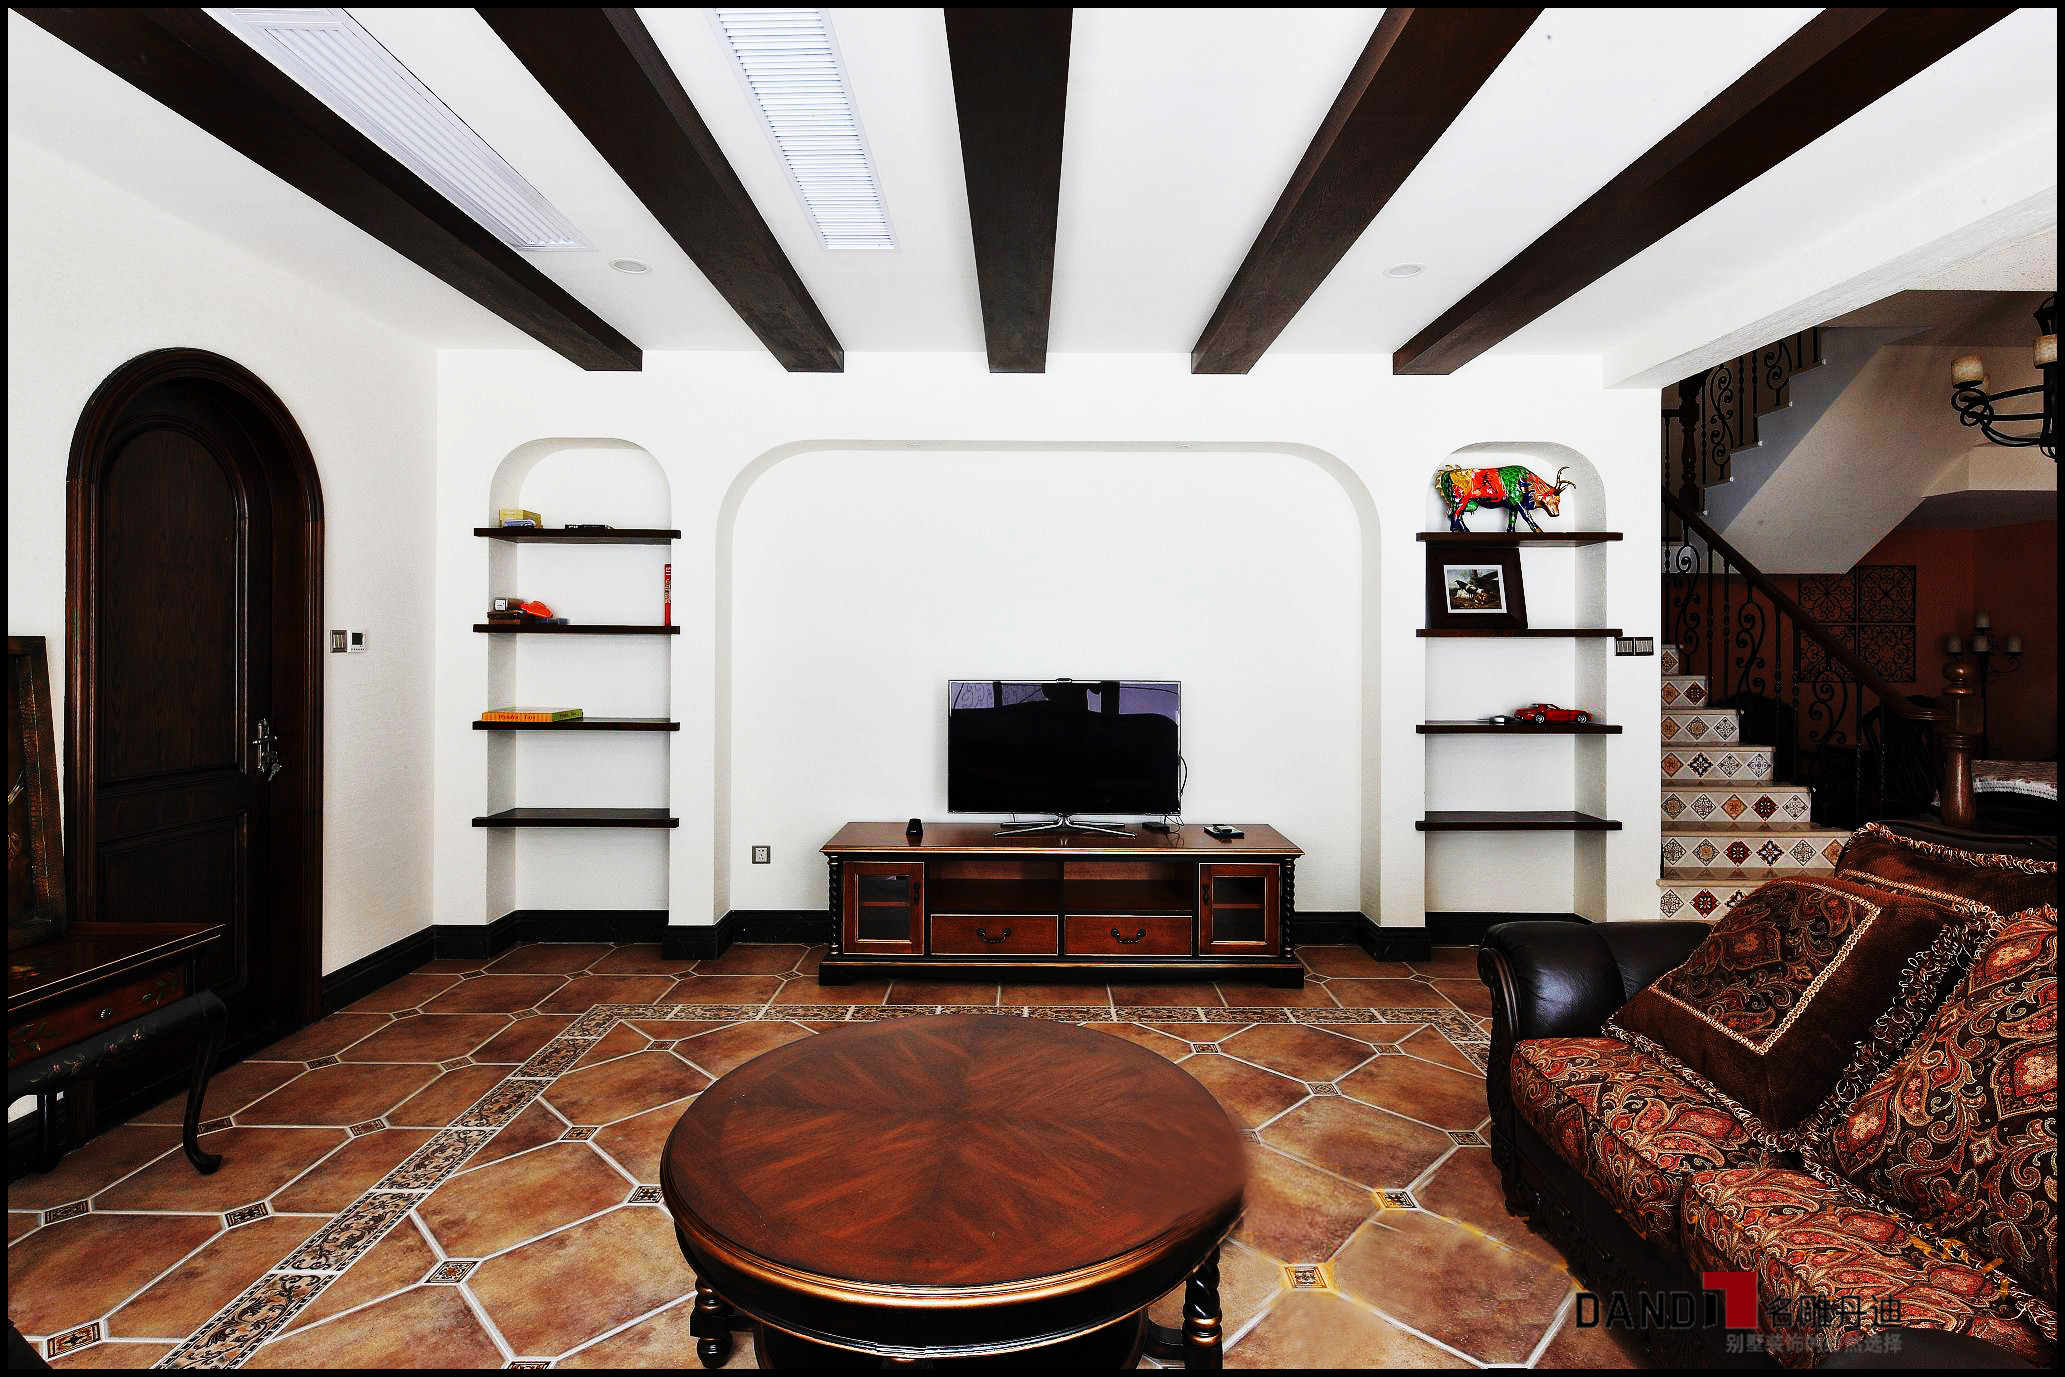 风格 居家随意 富有情趣 客厅 客厅图片来自名雕丹迪在别致西班牙风情